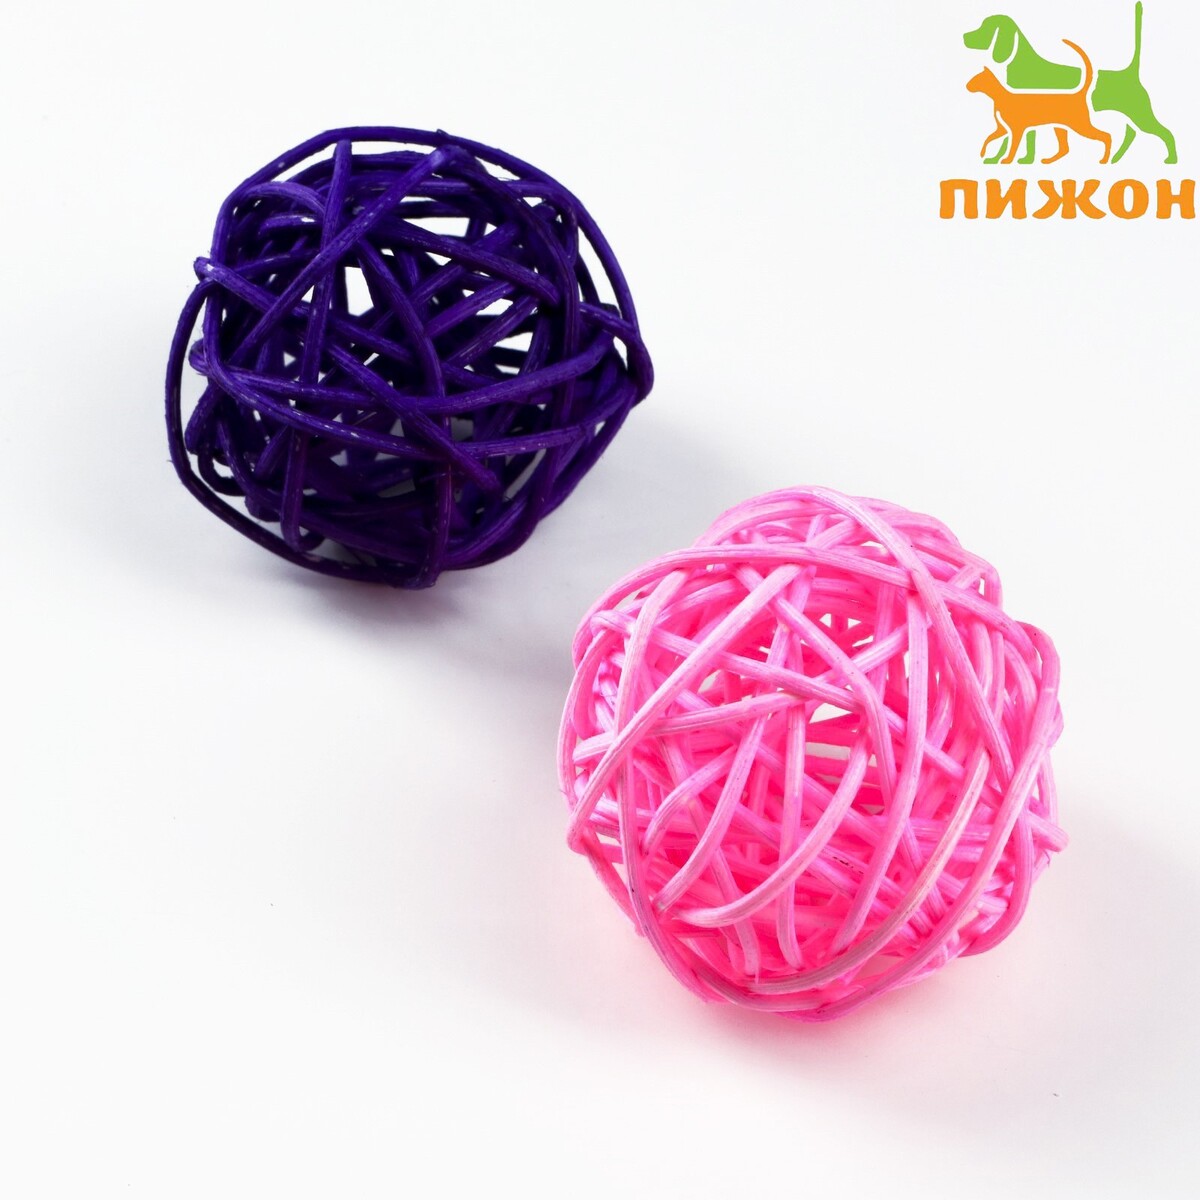 Набор из 2 плетеных шариков из лозы без бубенчиков, 5 см, фиолетовый/розовый набор шариков для аквамозаики